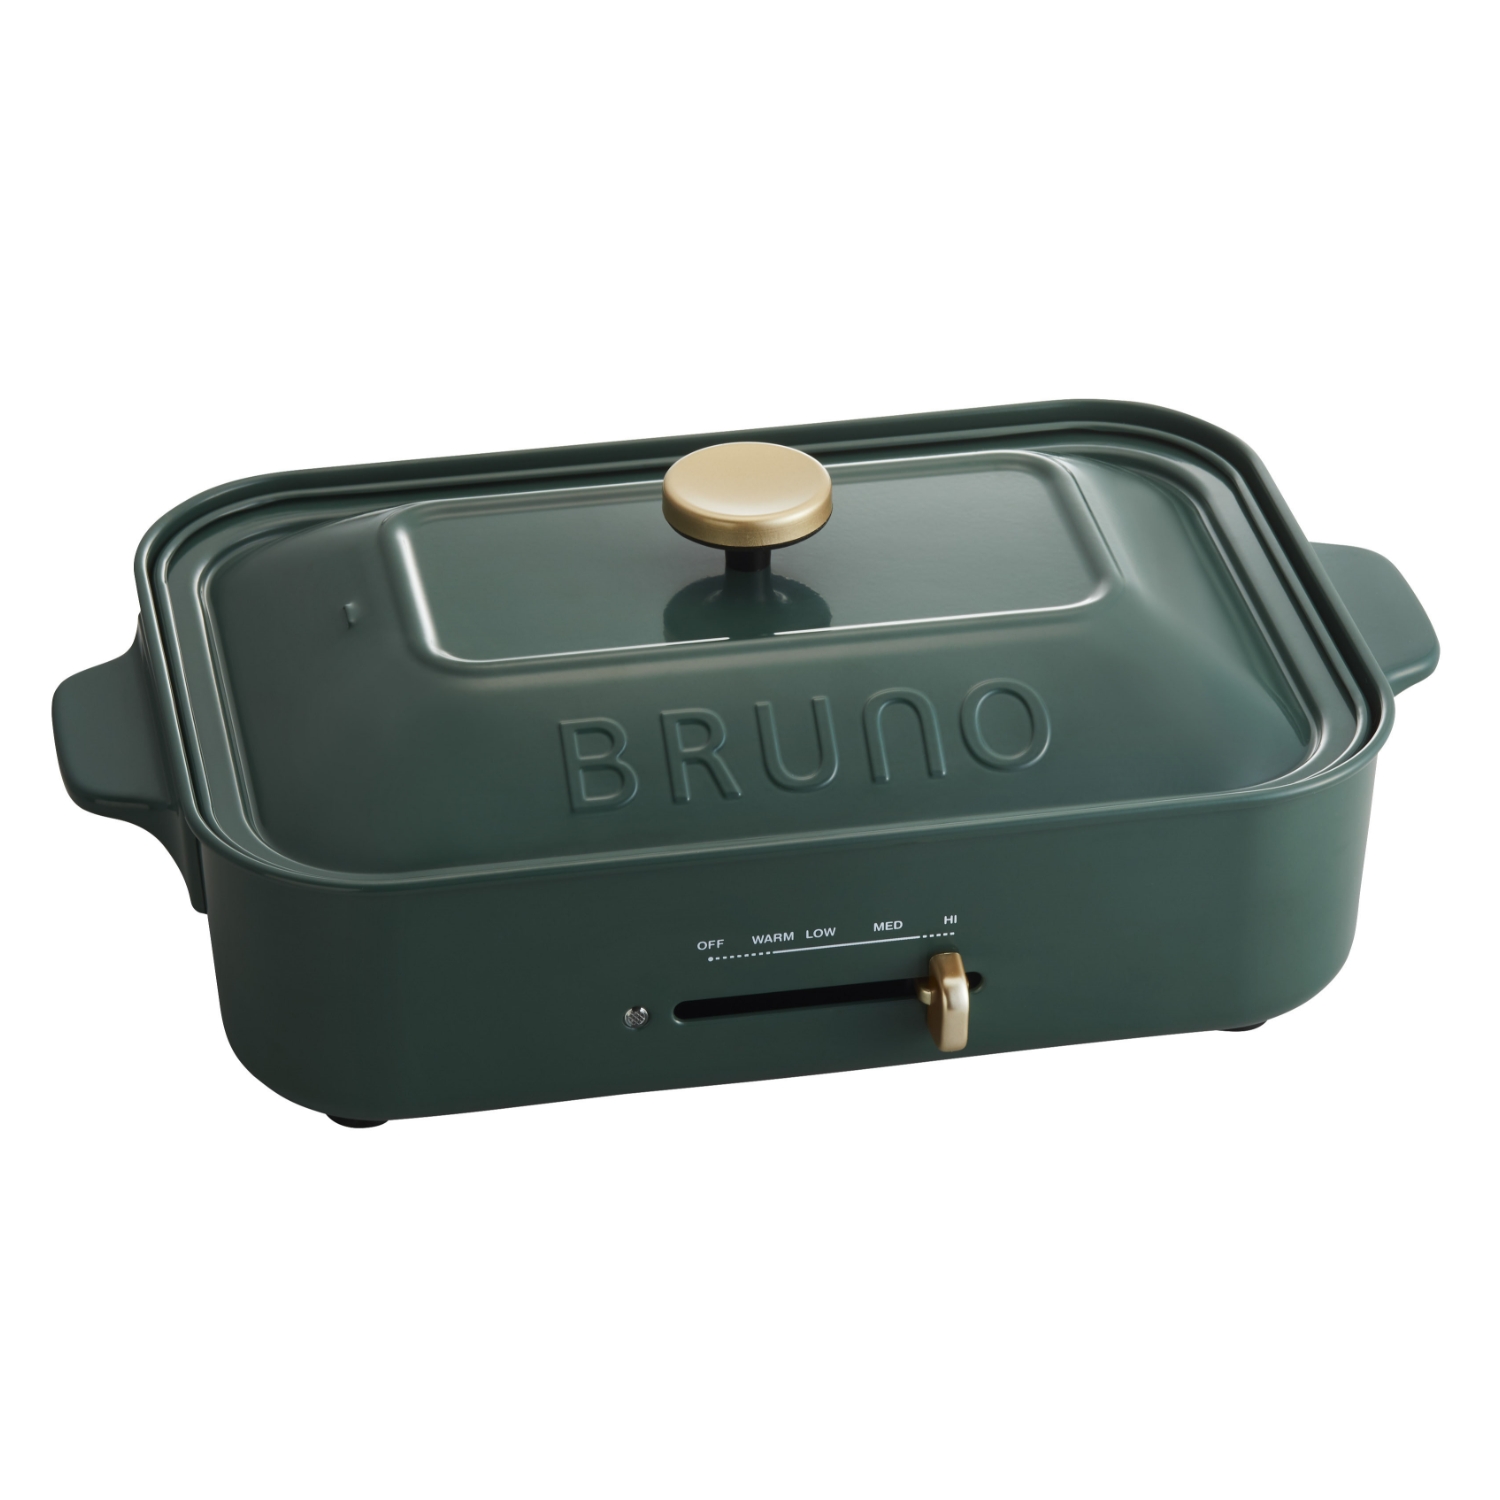 BRUNO/コンパクトホットプレート - スタイルストア